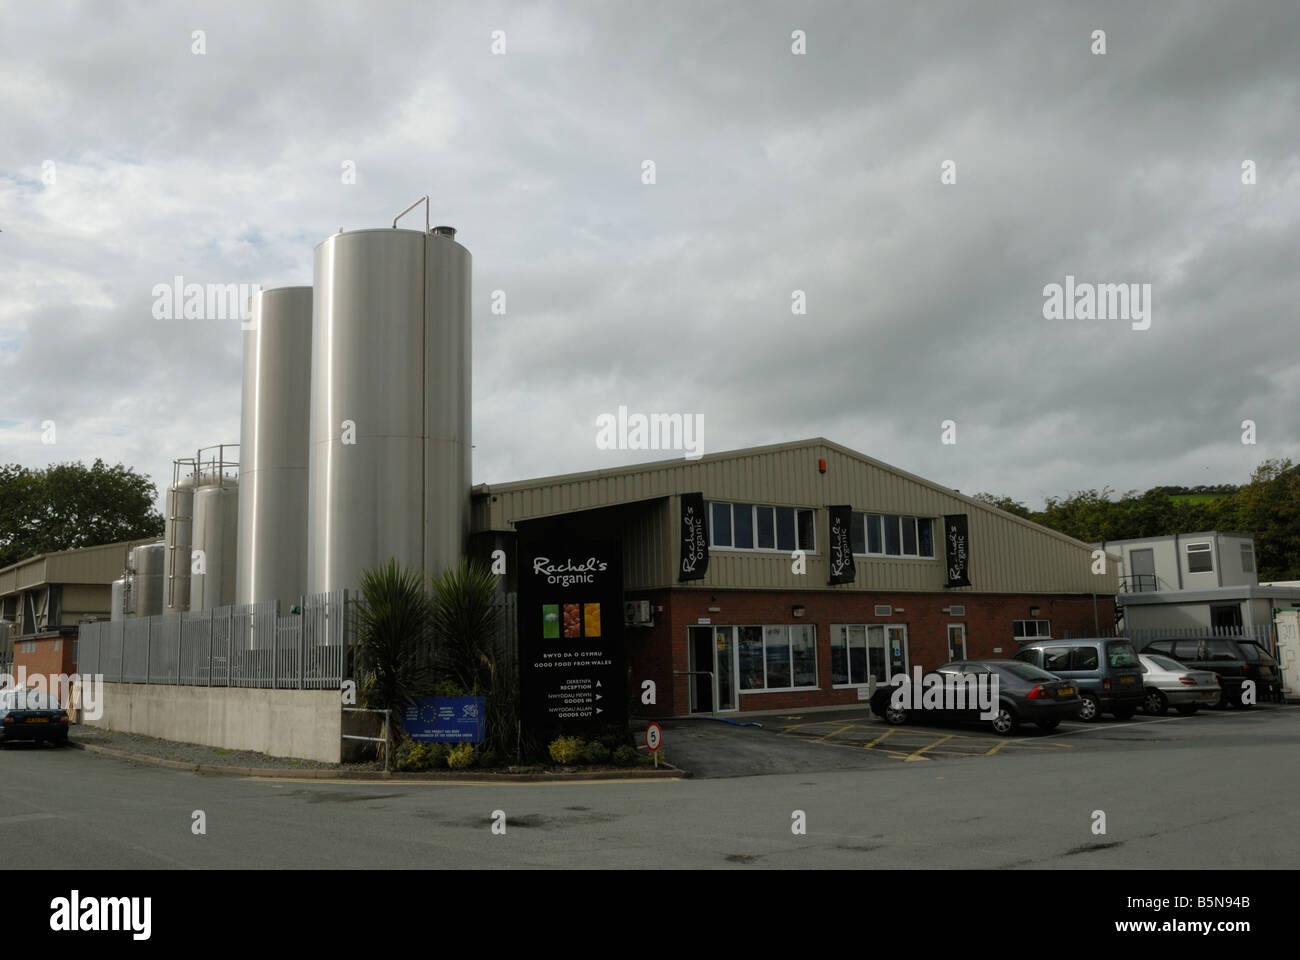 Les fabricants de produits laitiers s Rachel le yogourt biologique Aberystwyth Banque D'Images